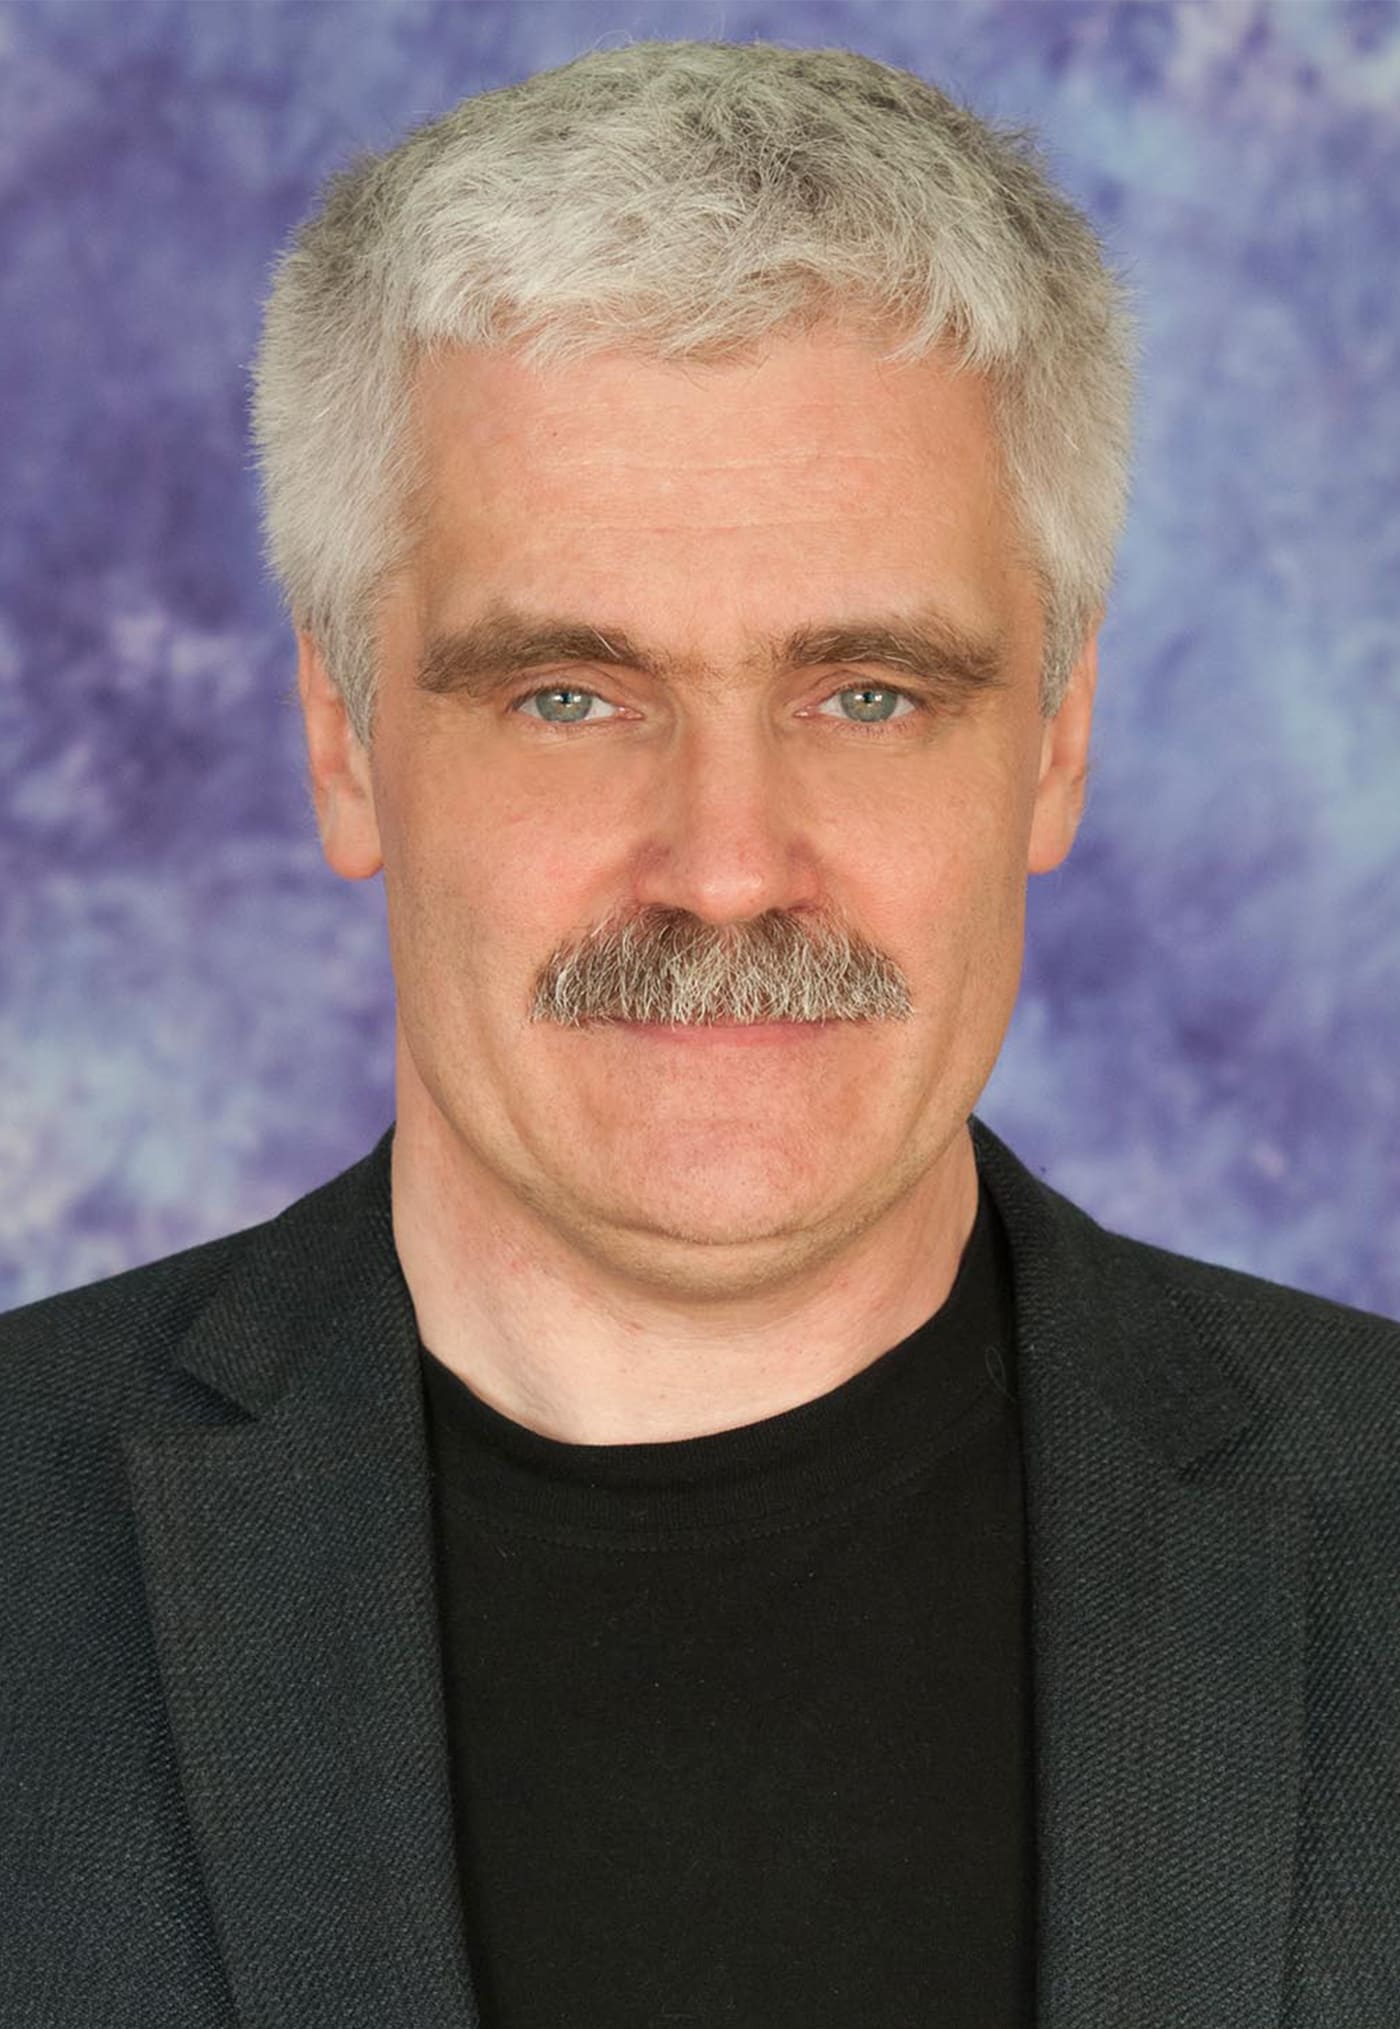 Храмченков Дмитрий Викторович- лектор, учитель физики